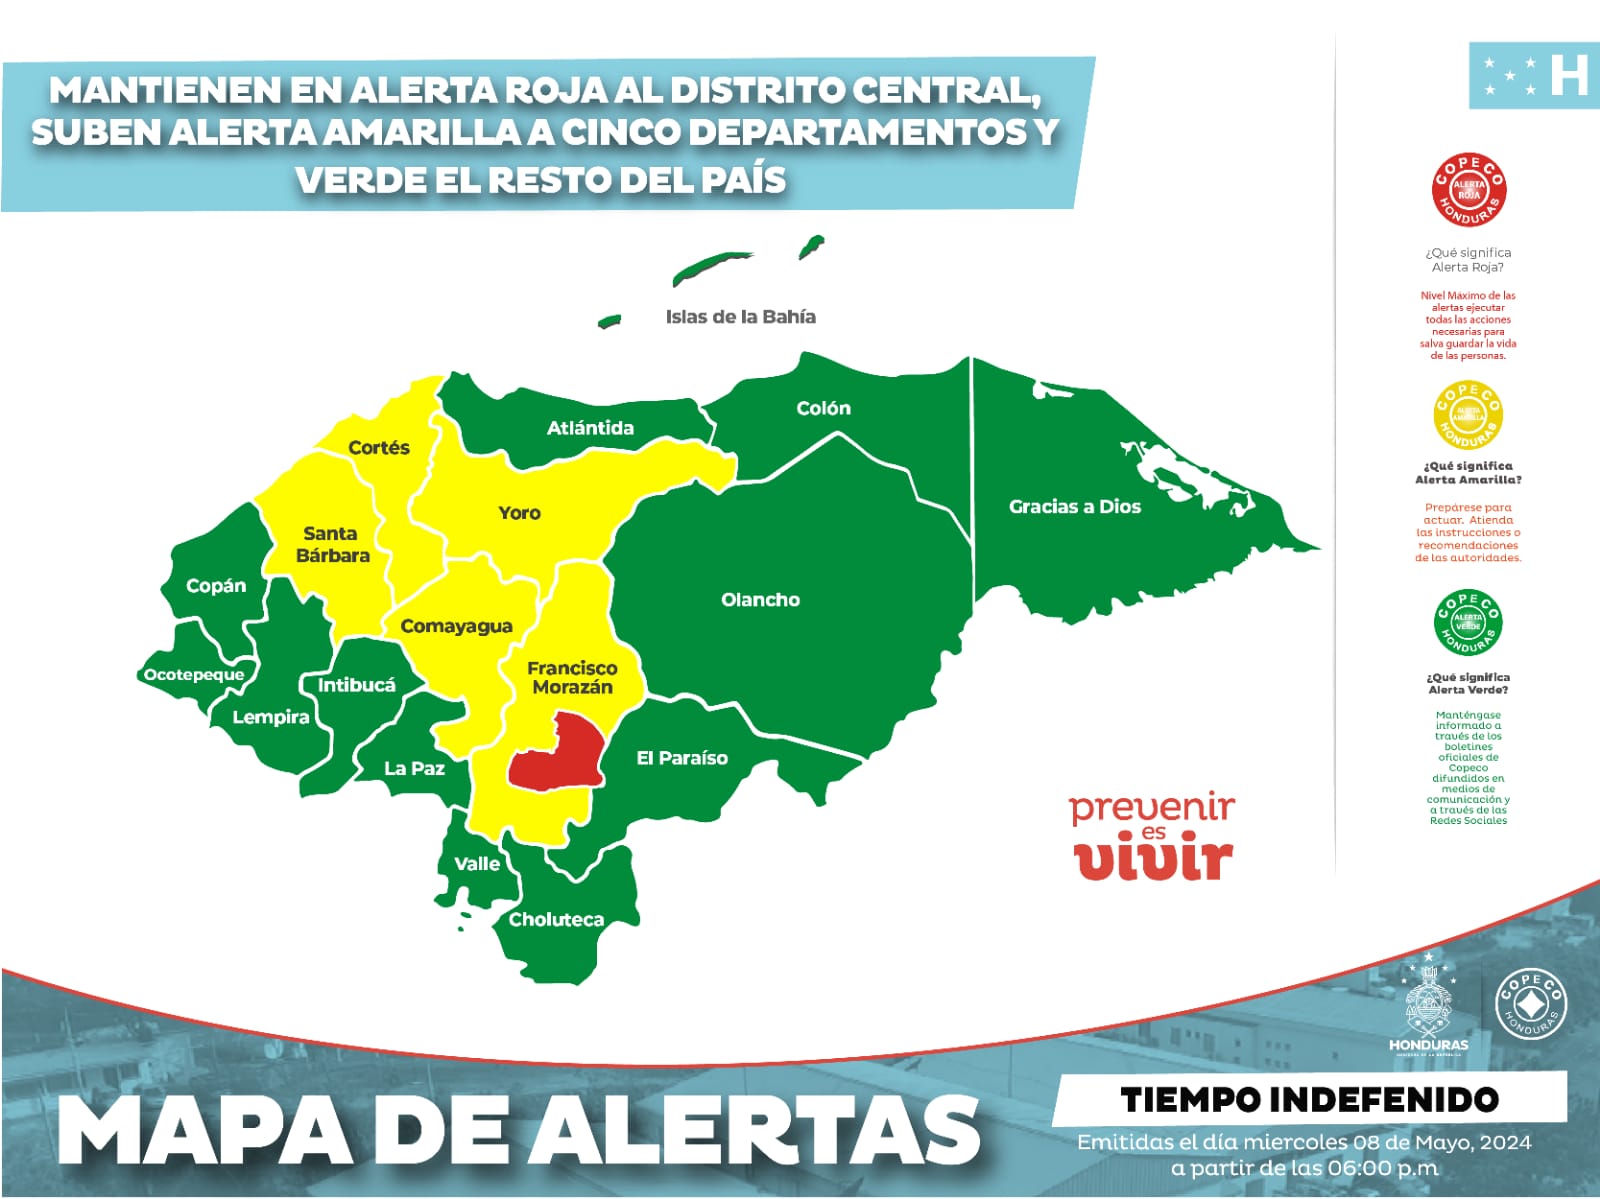 Mantienen en alerta roja al Distrito Central, alerta amarilla a cinco departamentos más y verde el resto del país